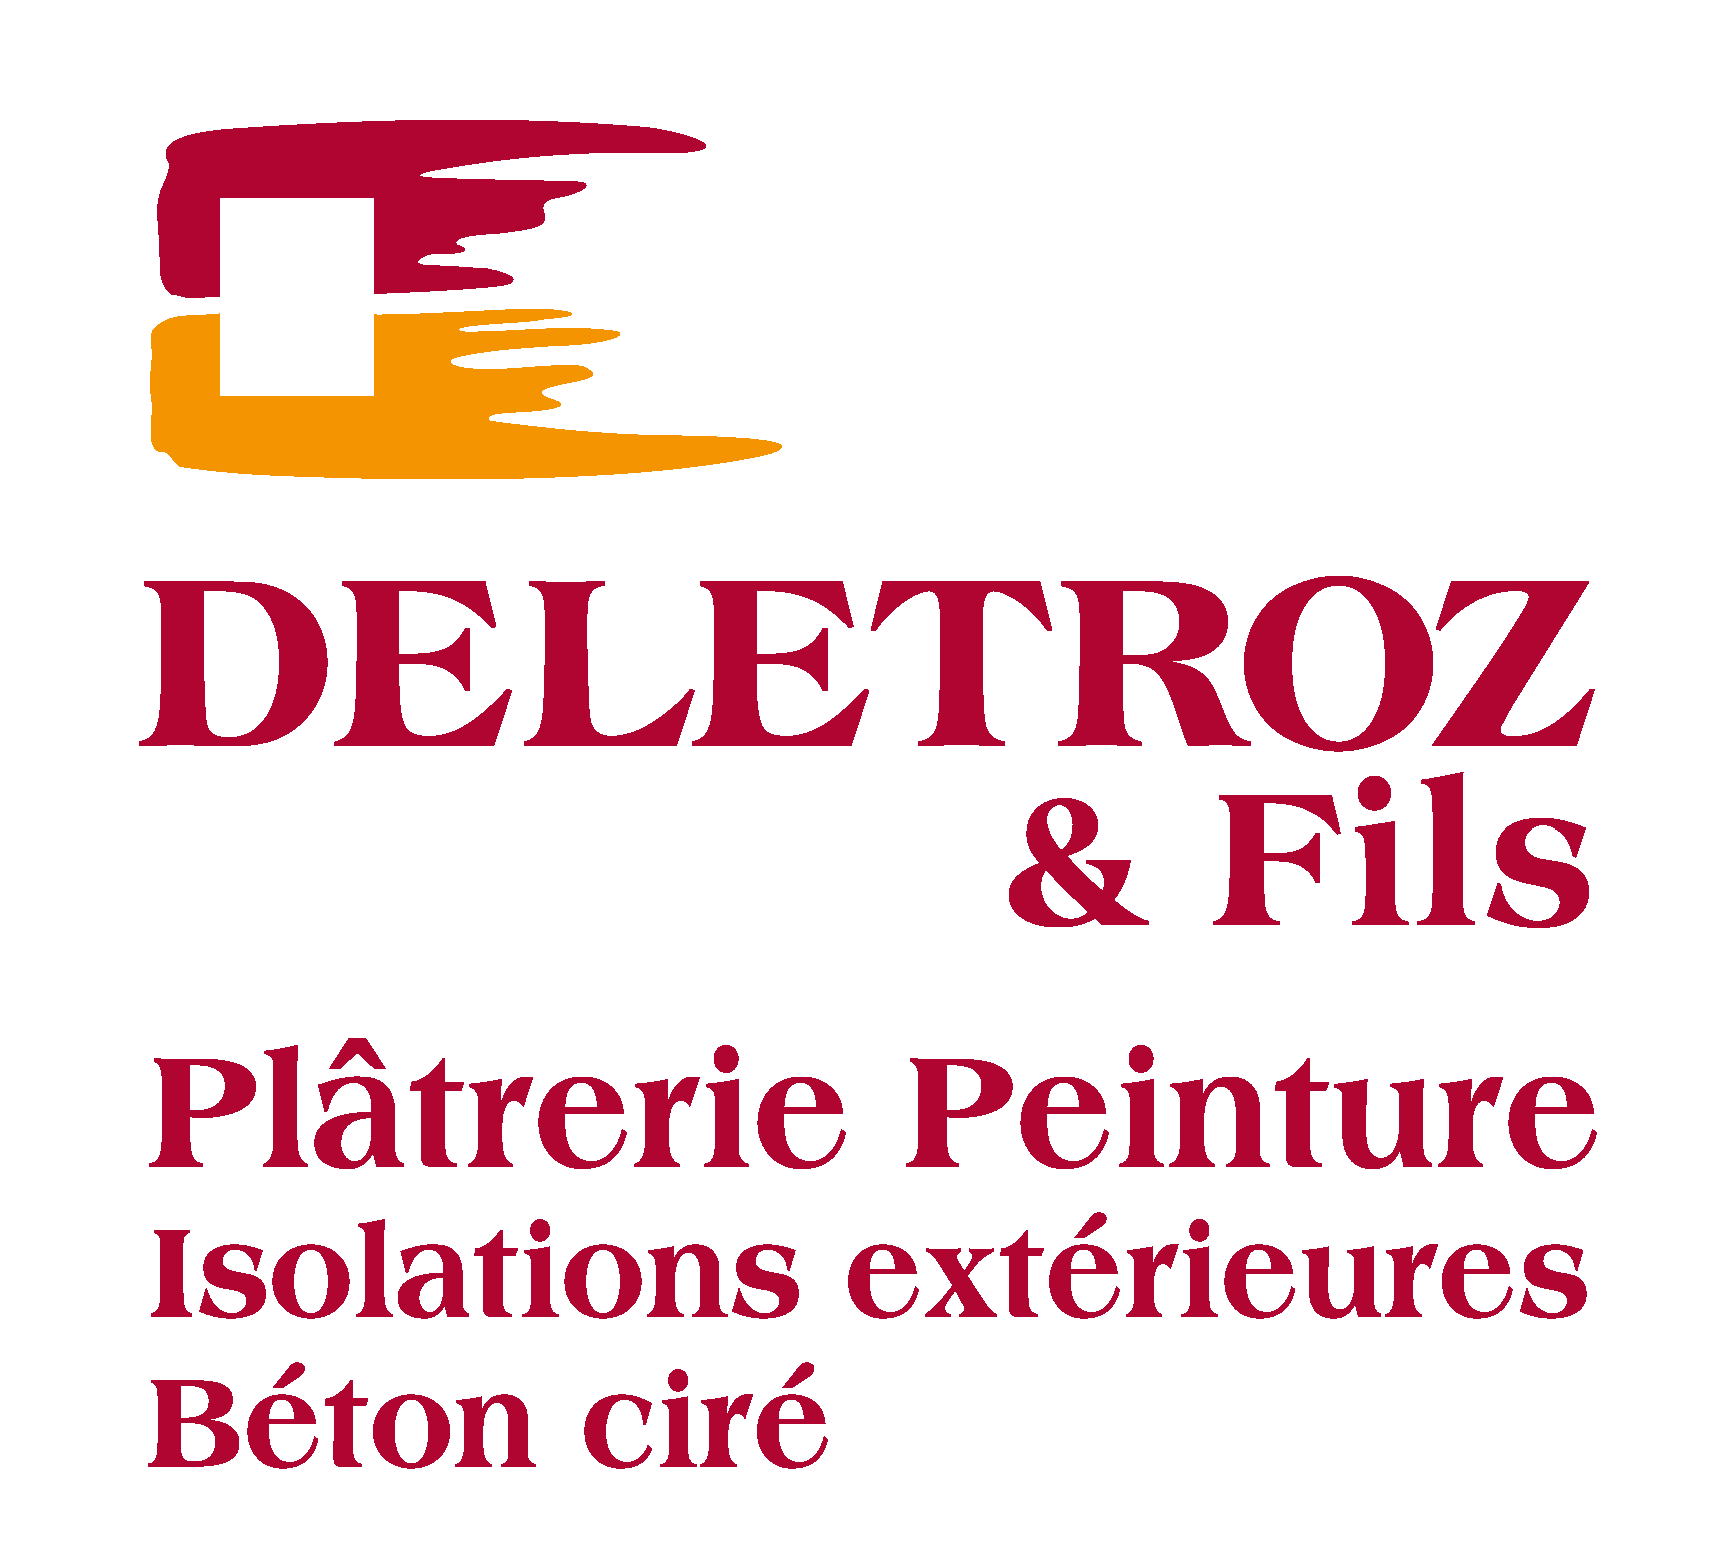 Deletroz & Fils